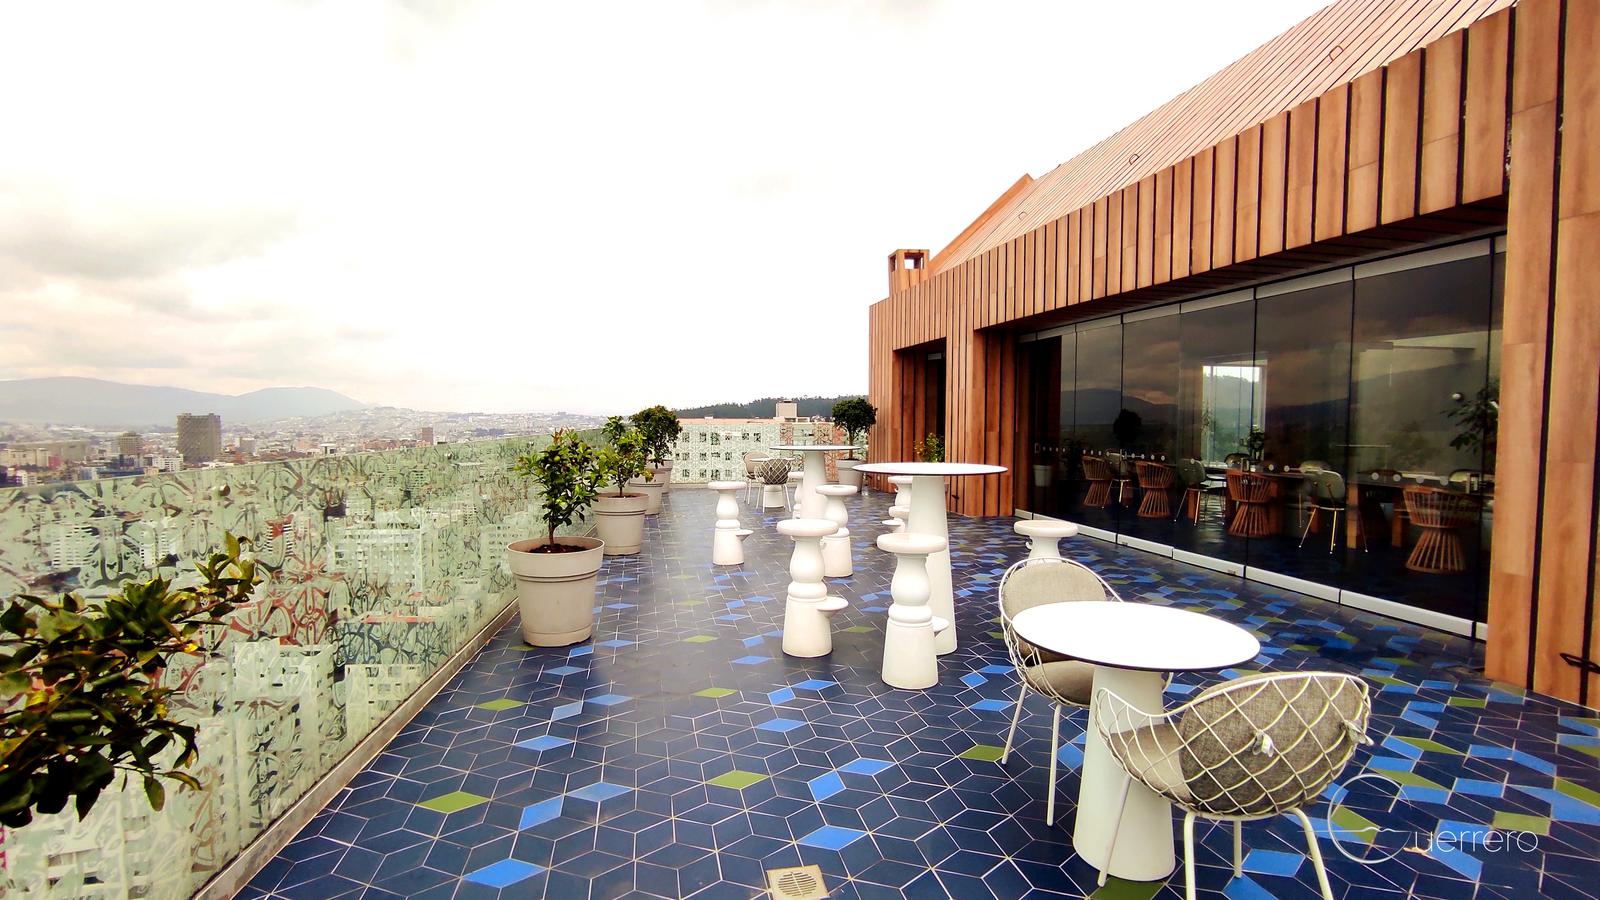 En venta /renta (amoblada) suite de lujo con terraza, en el edificio Oh de Uribe